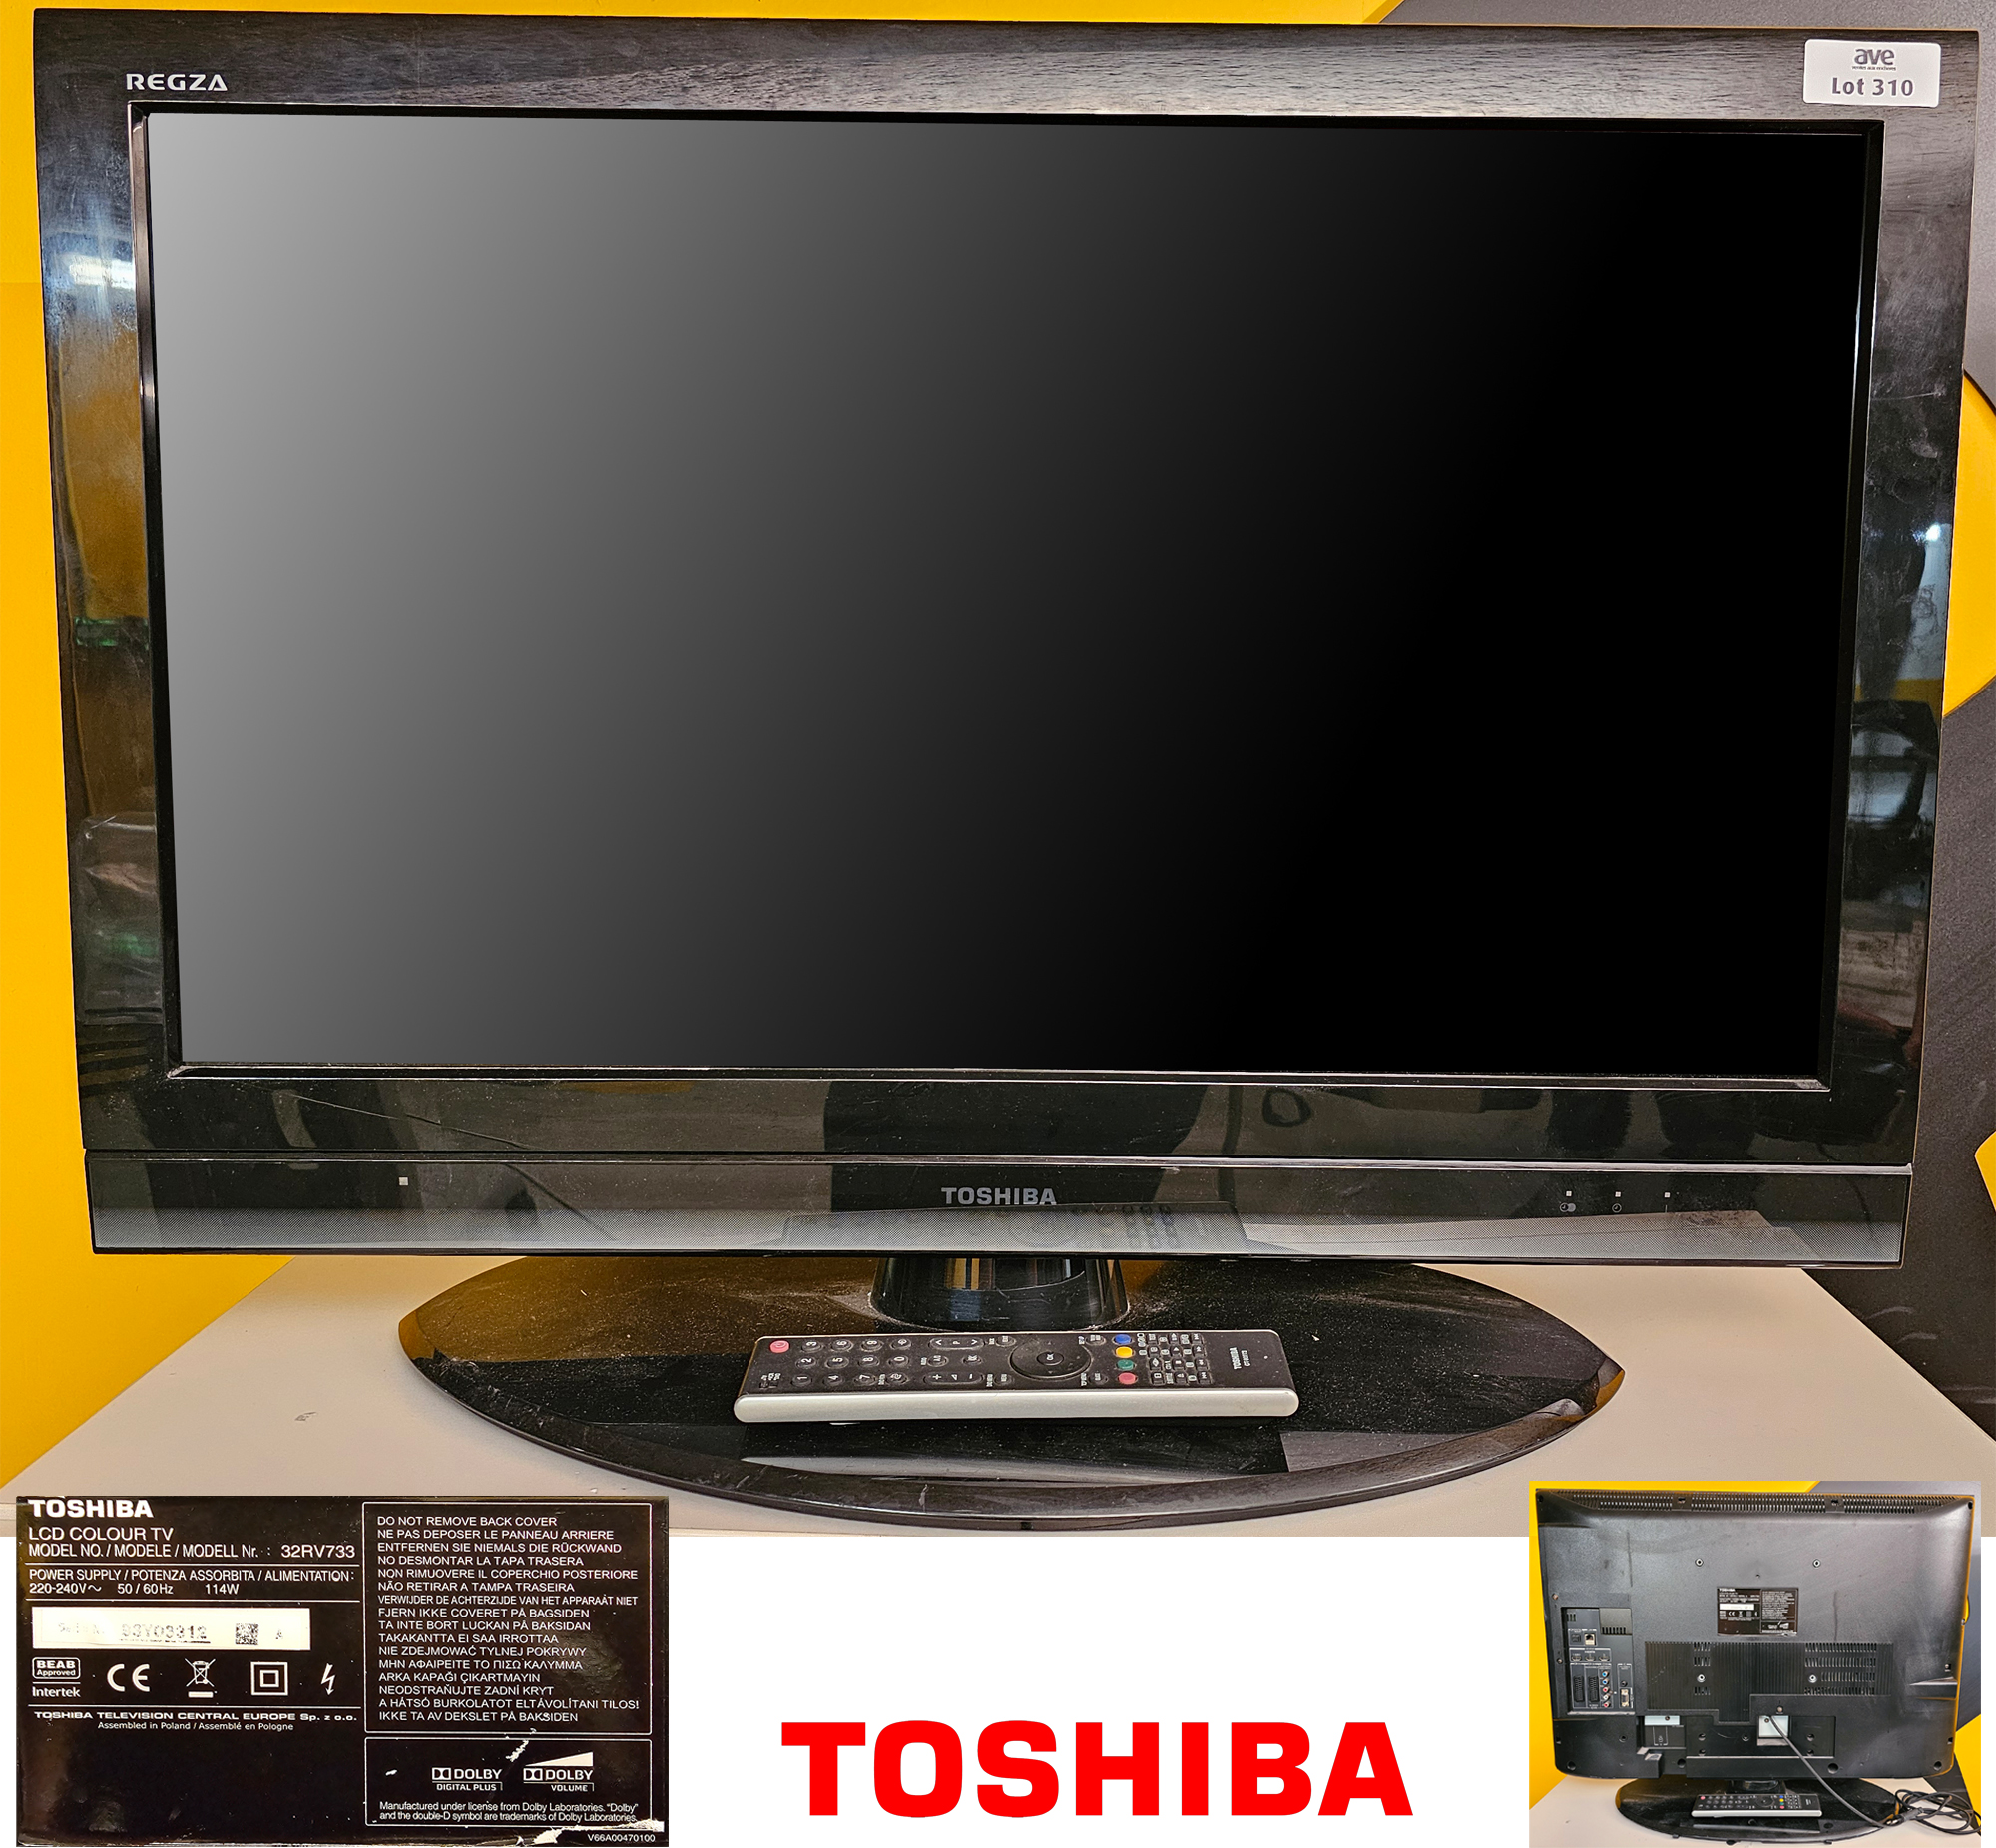 TELEVISION SUR PIED A ECRAN LCD 32 POUCES DE MARQUE TOSHIBA MODELE 32RV733. VENDU AVEC SA TELECOMMANDE ET SON CABLE D'ALIMENTATION. LOCALISATION : SS-2 ARCHIVES